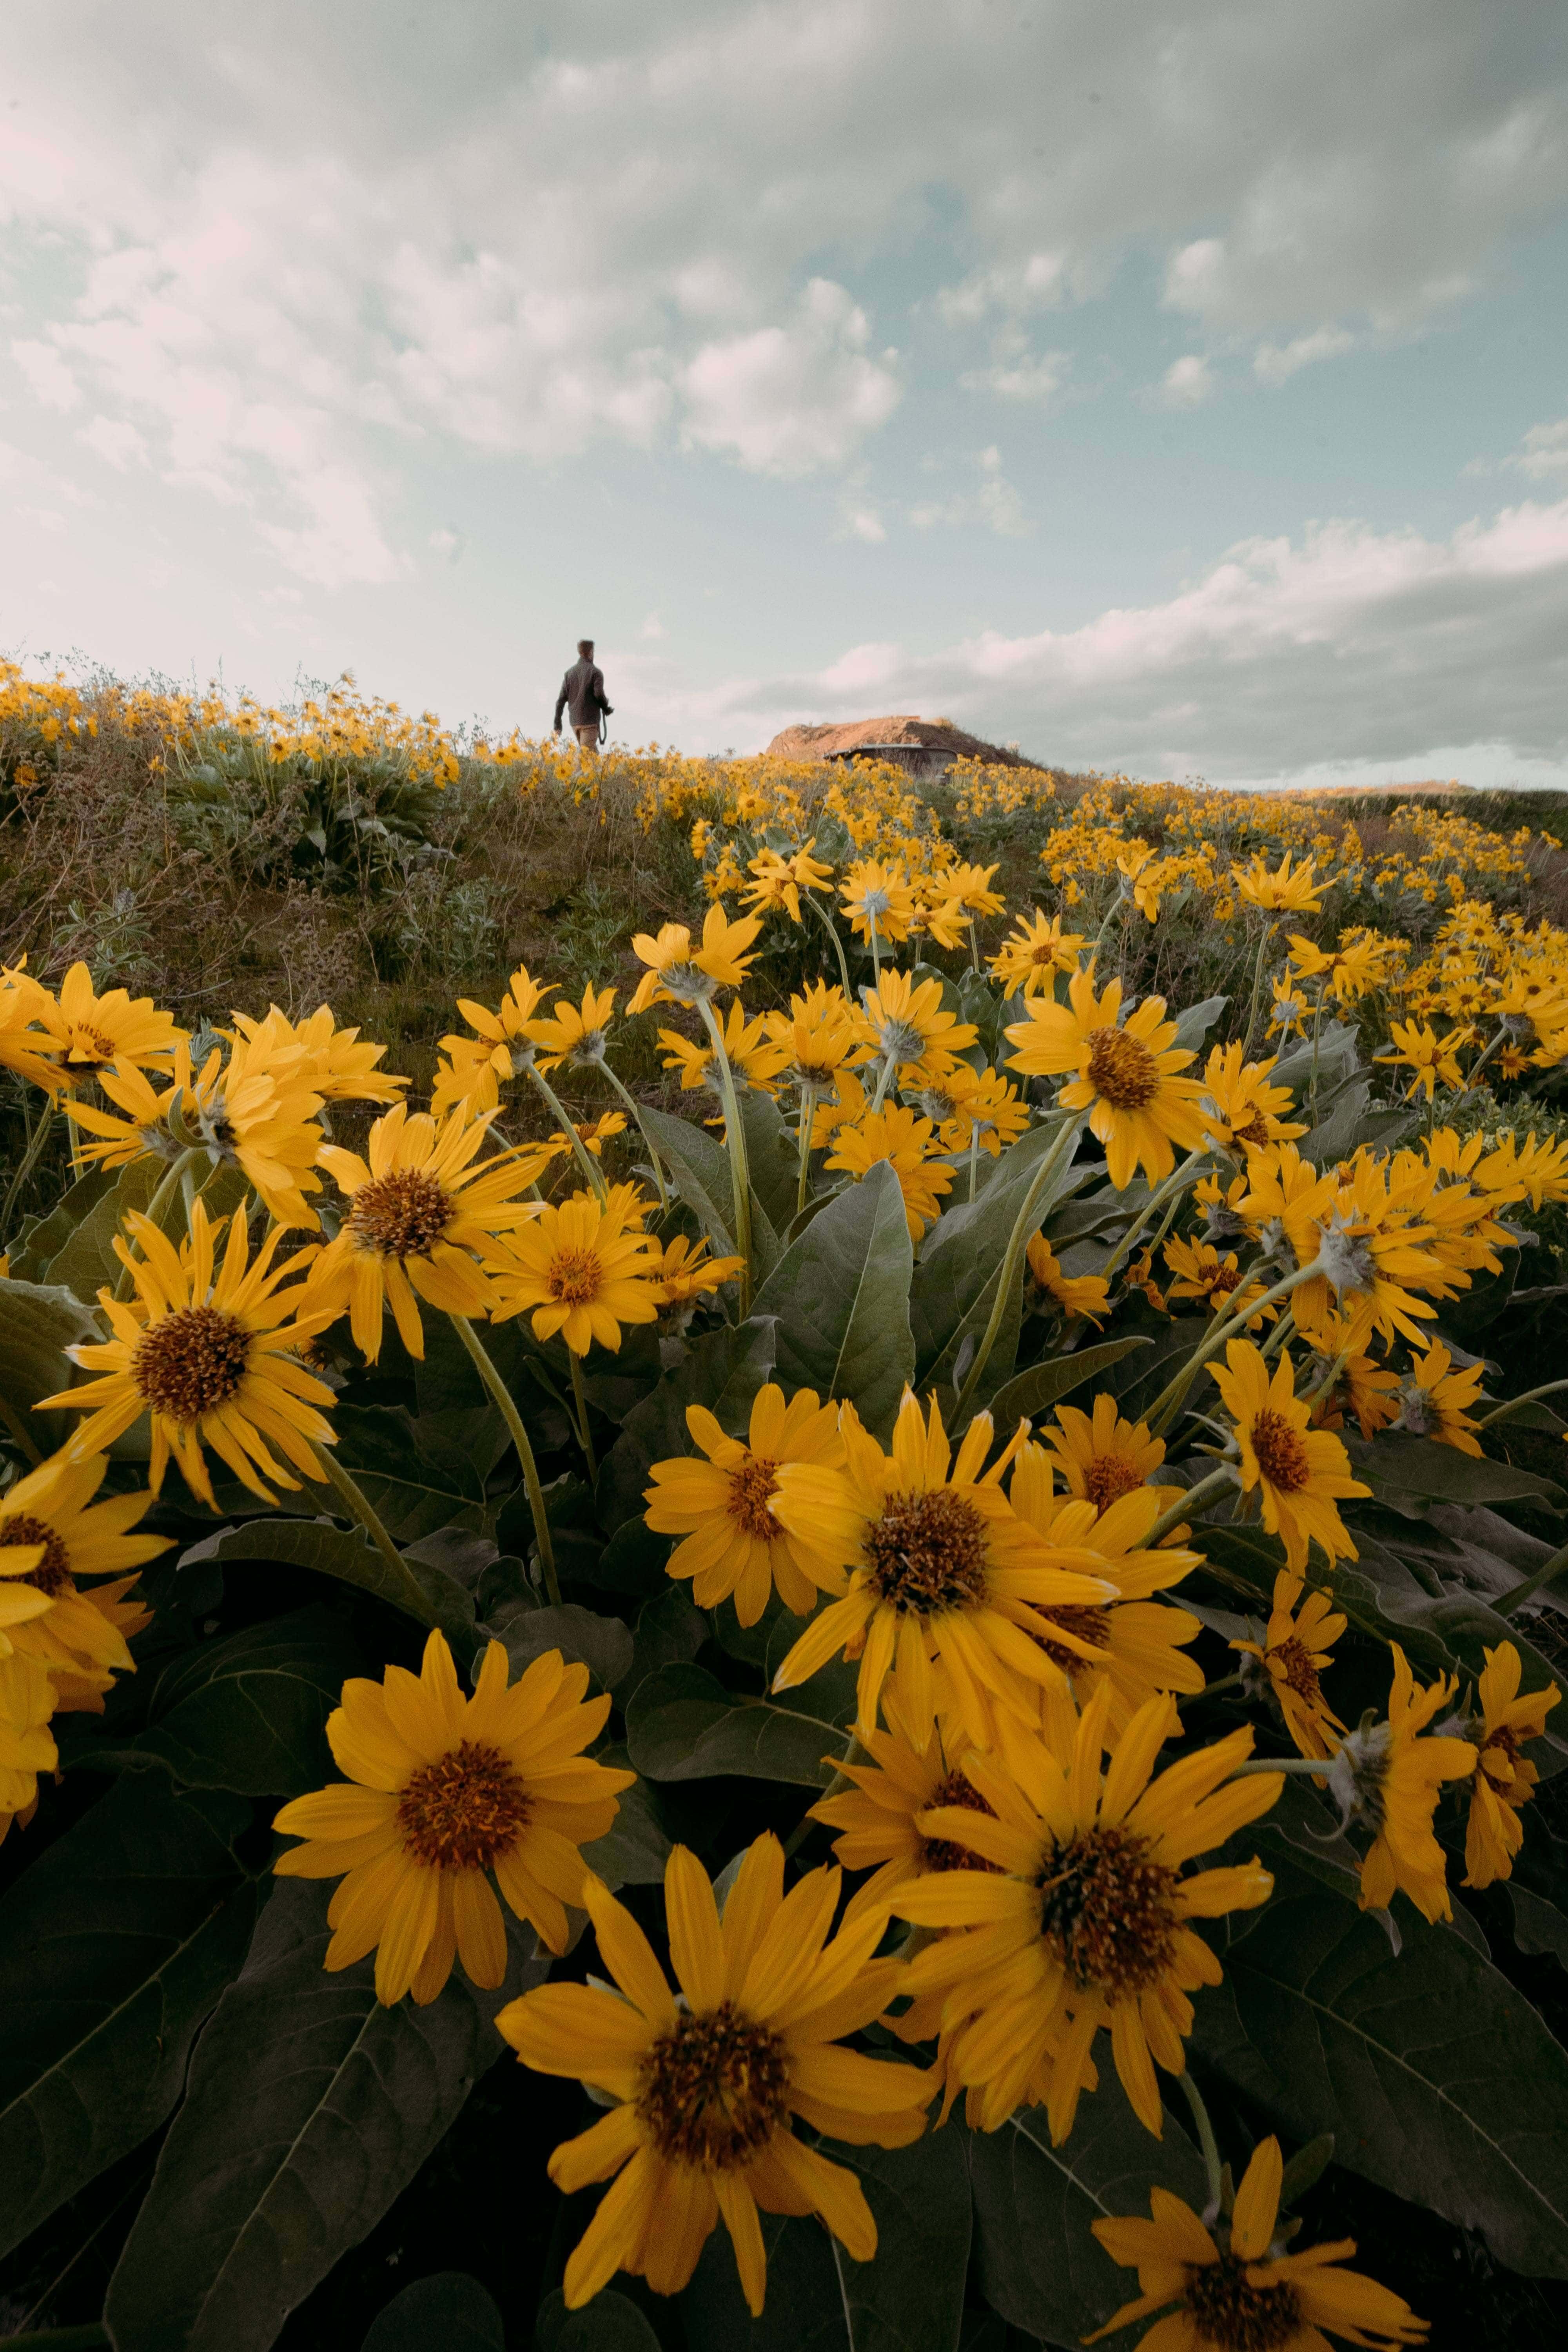 Flowers in a Field by Jordan McGrath